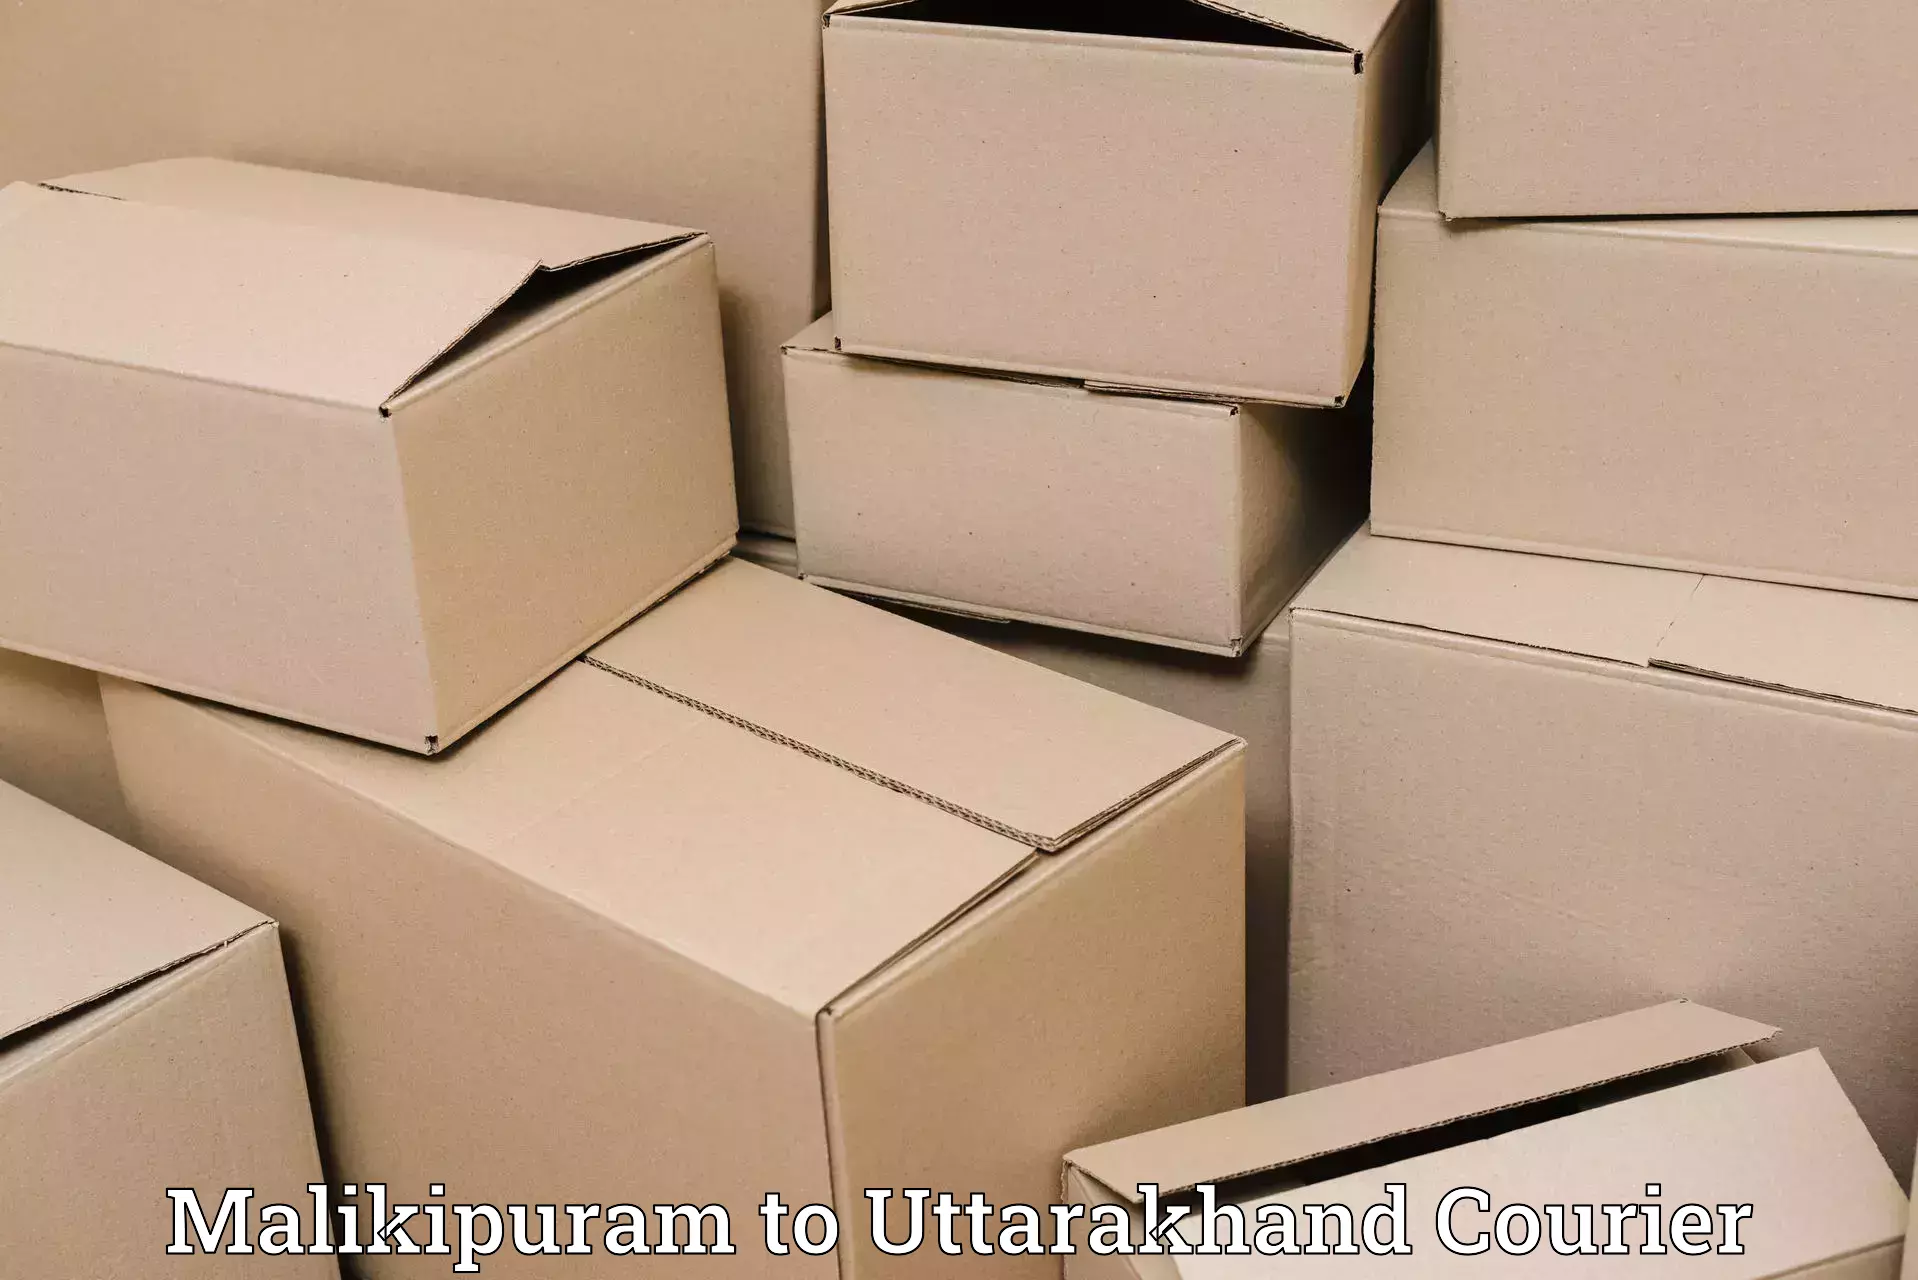 Lightweight parcel options Malikipuram to Uttarakhand